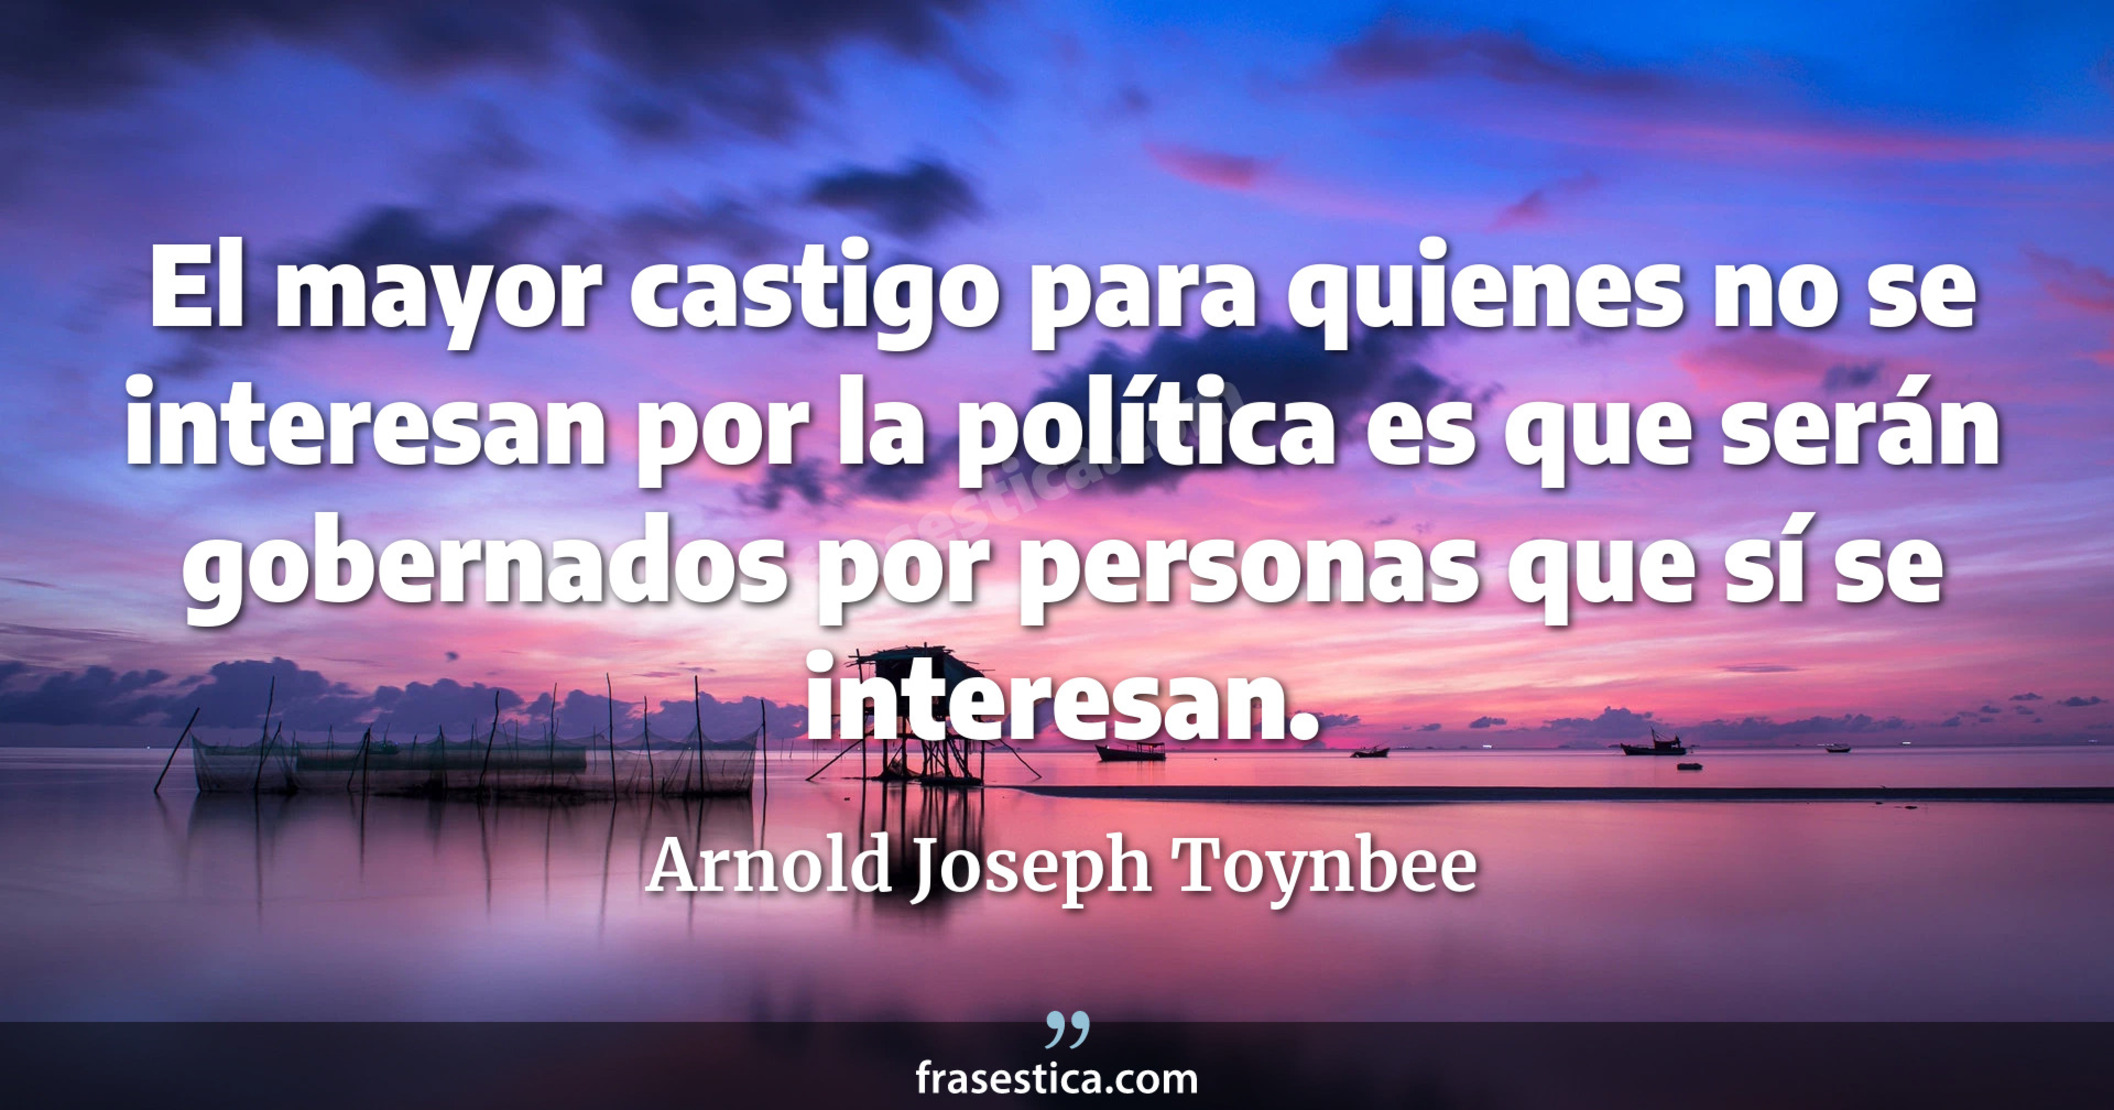 El mayor castigo para quienes no se interesan por la política es que serán gobernados por personas que sí se interesan. - Arnold Joseph Toynbee